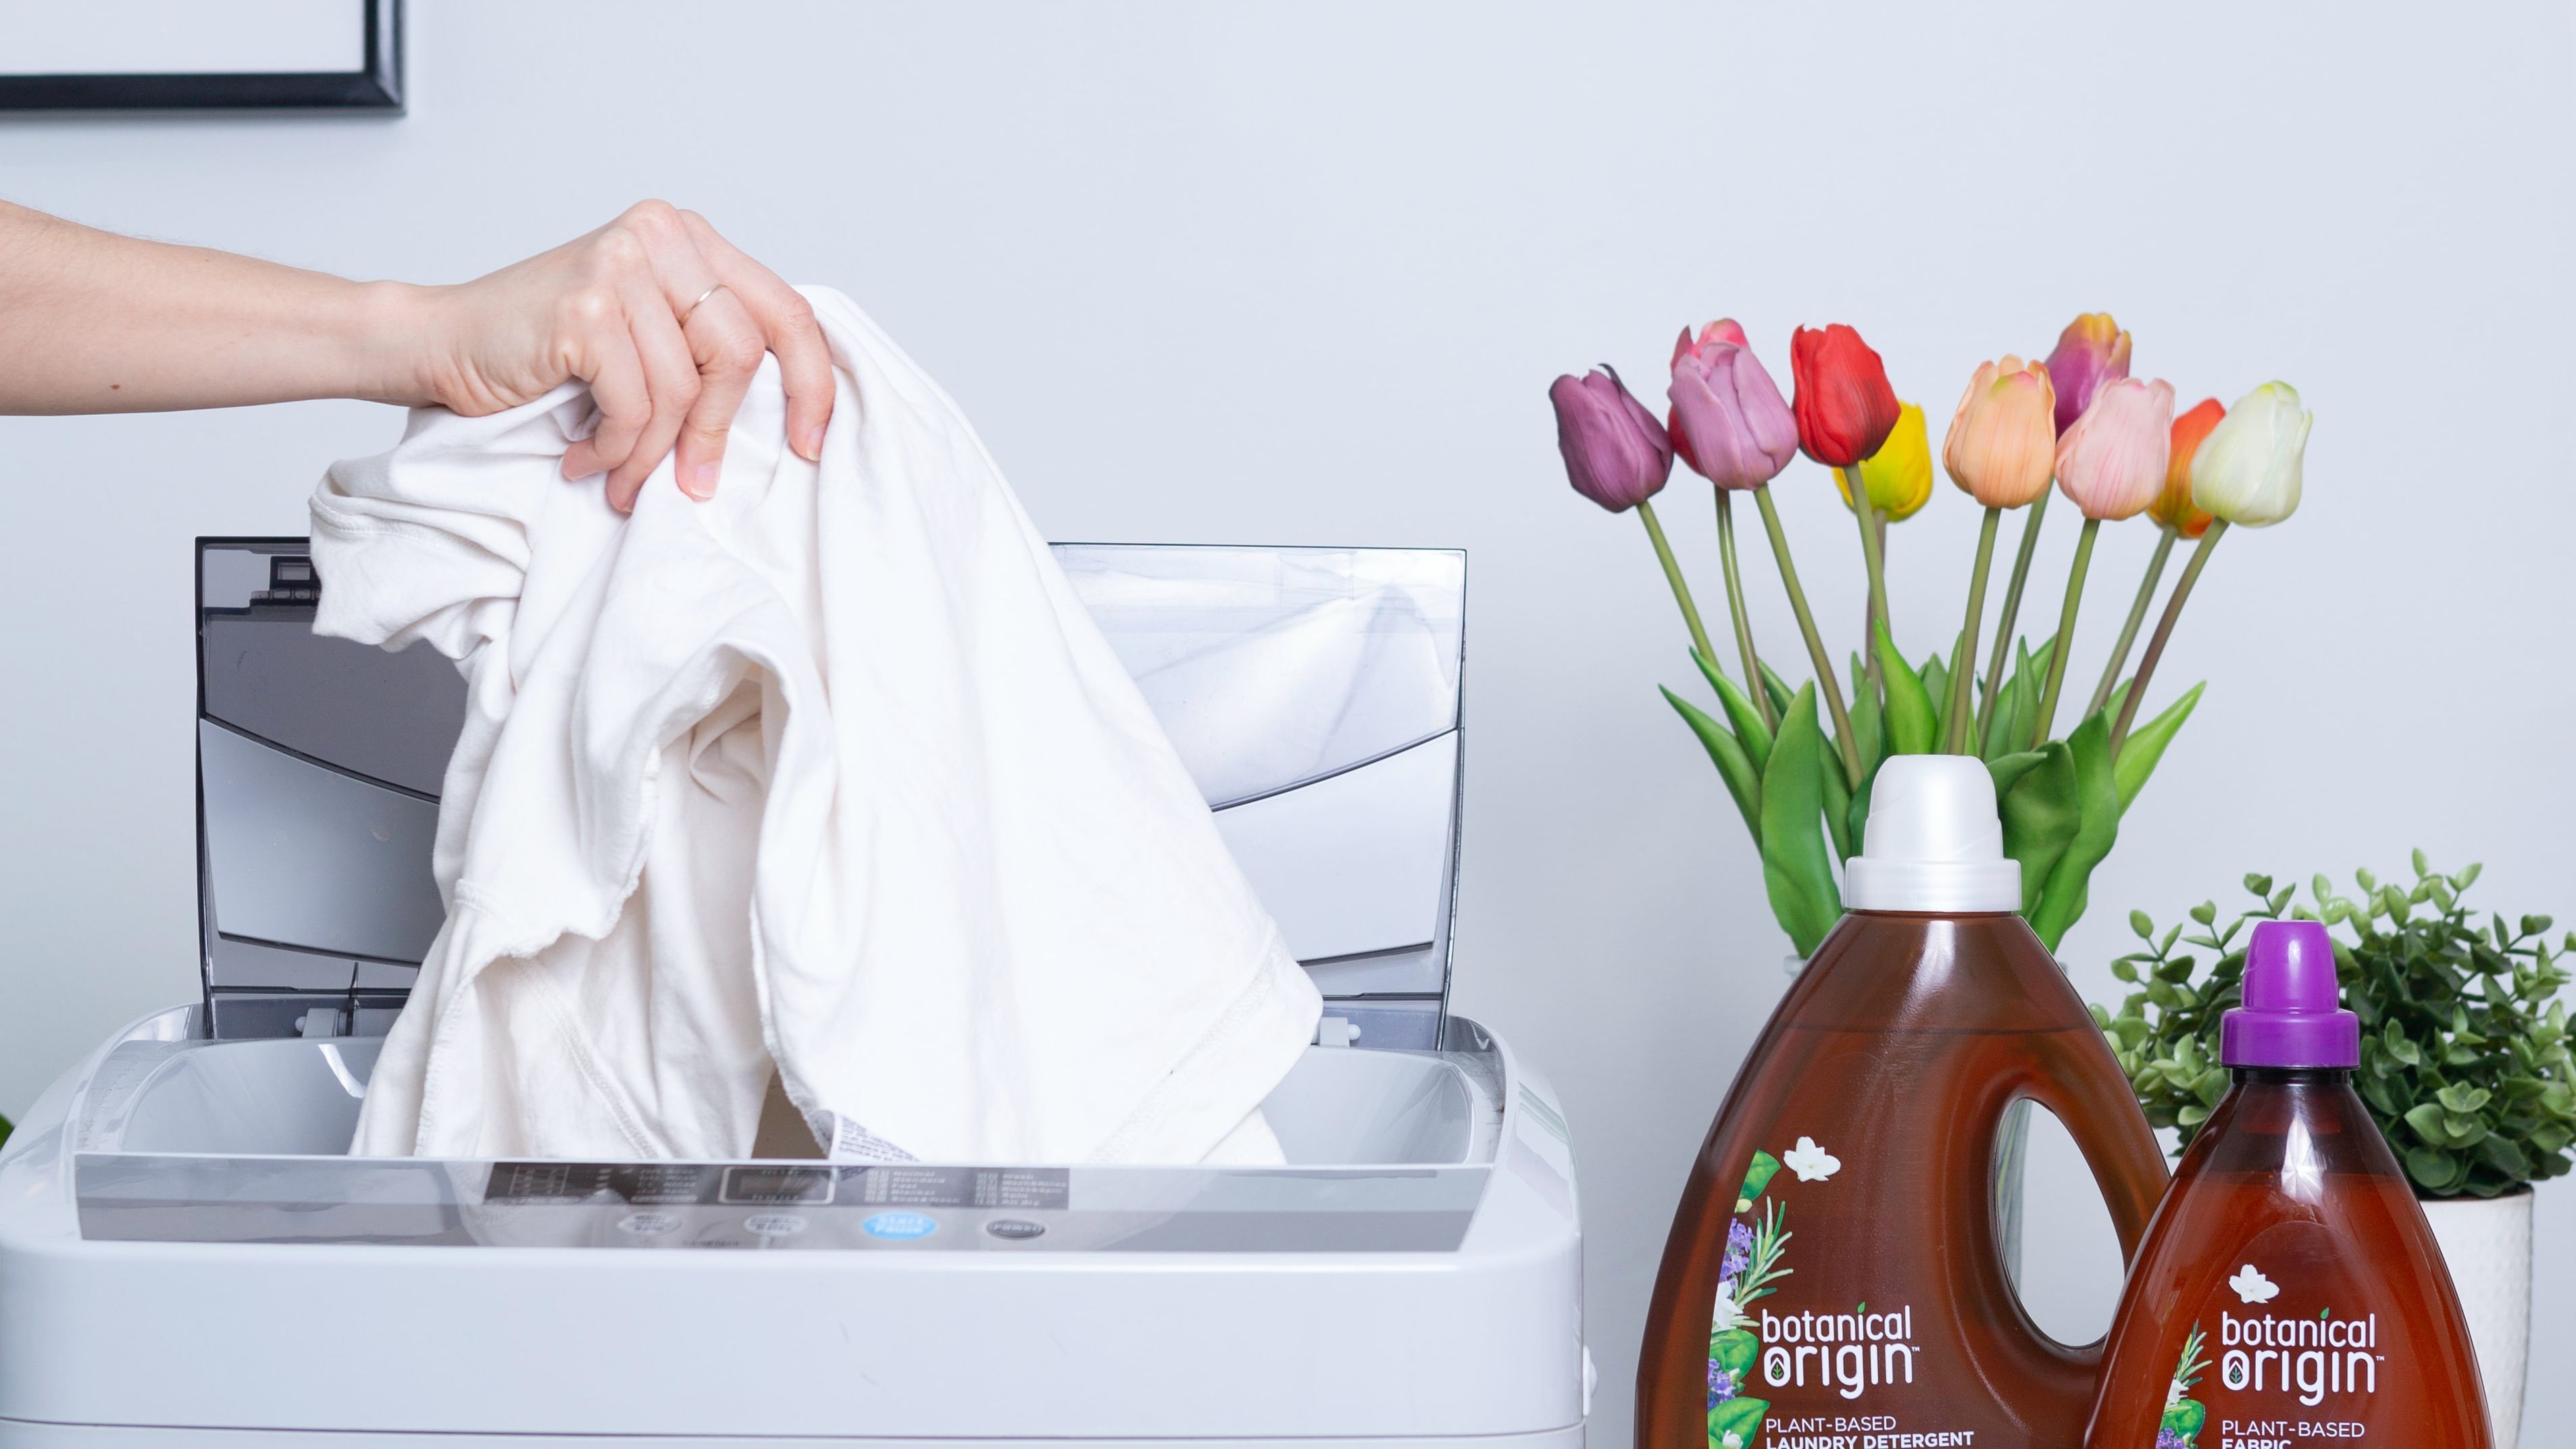 DETERGENTE  Los mejores detergentes de marca blanca, según OCU